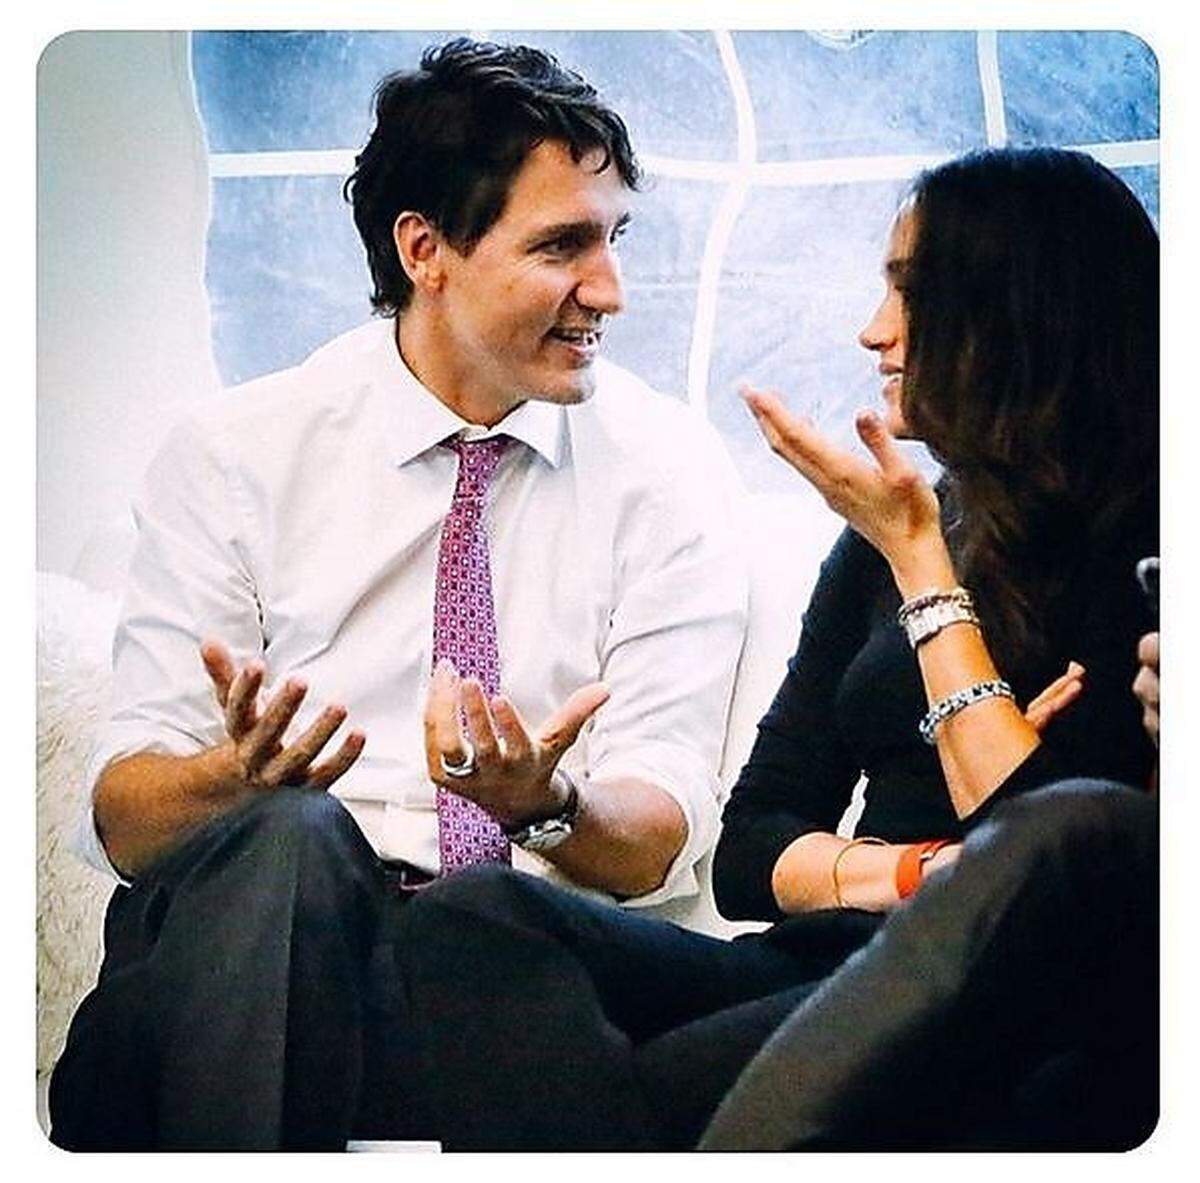 Viele sehen Markles Engagement als Vorlage für die ideale, aktive Prinzessin des 21. Jahrhunderts: Wie gut, dass sie mit Figuren wie dem kanadischen Premier Justin Trudeau ohnehin schon auf Du und Du ist.